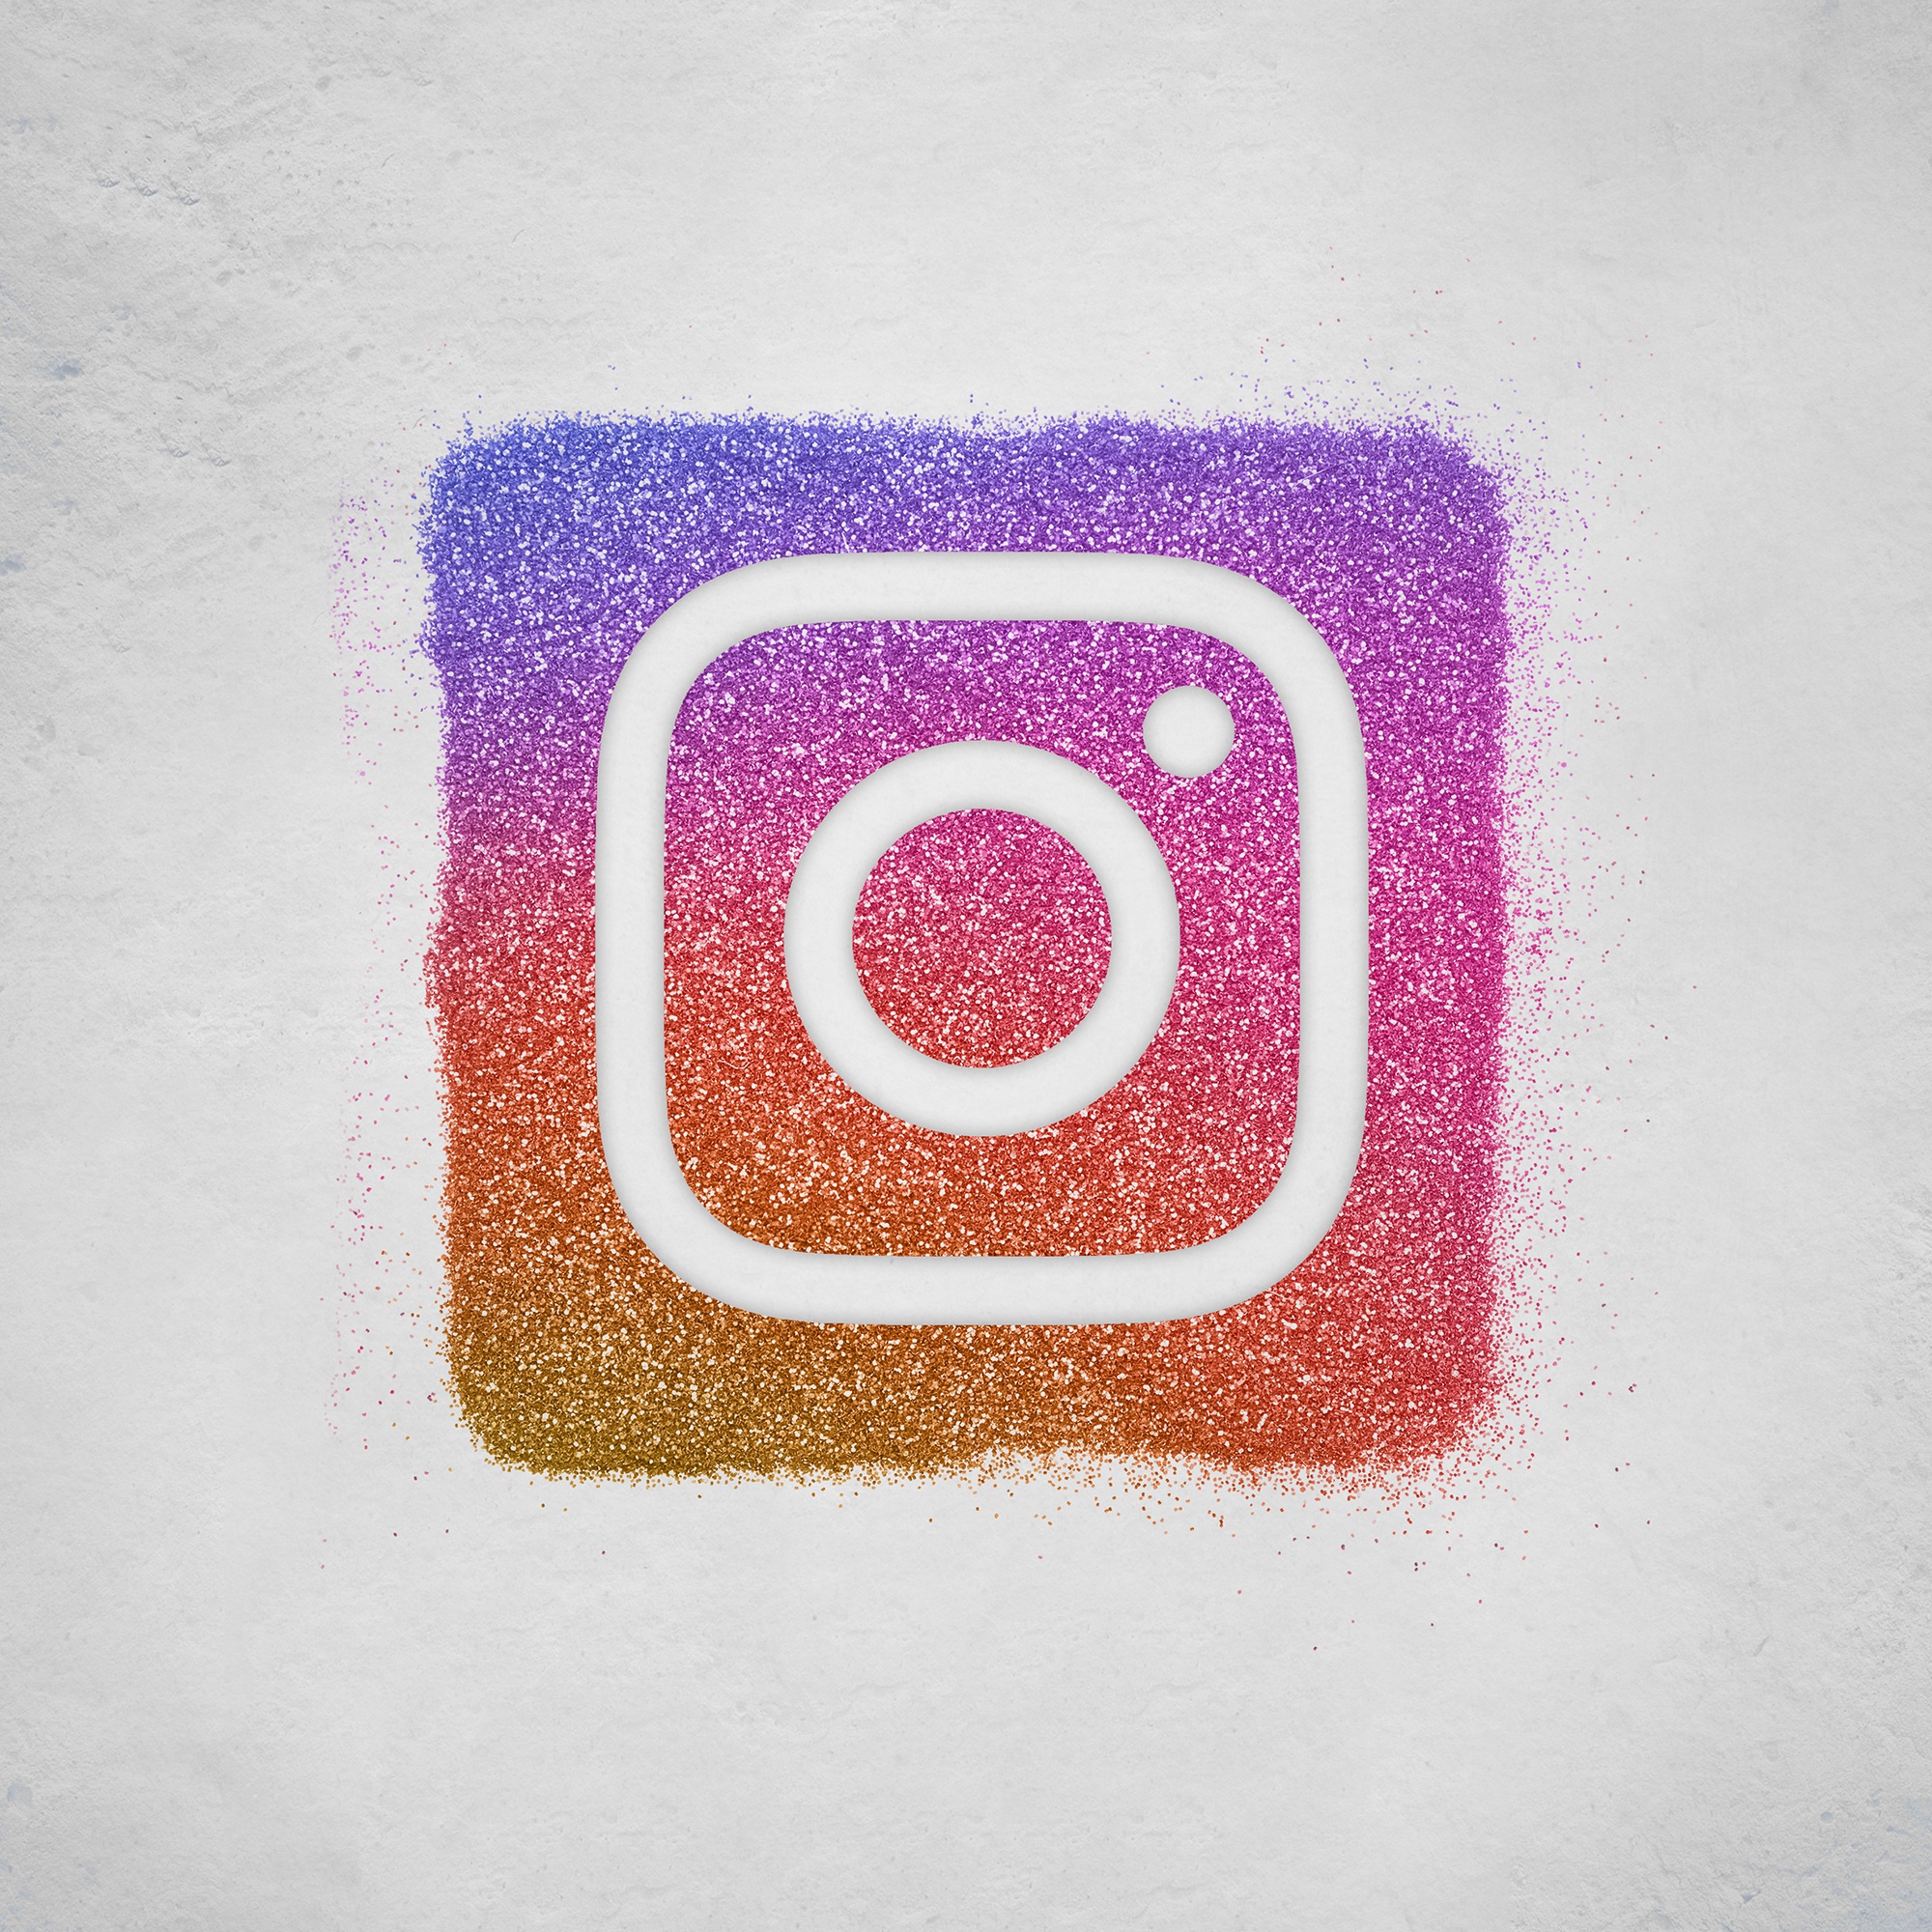 11 ways to optimise your Instagram bio